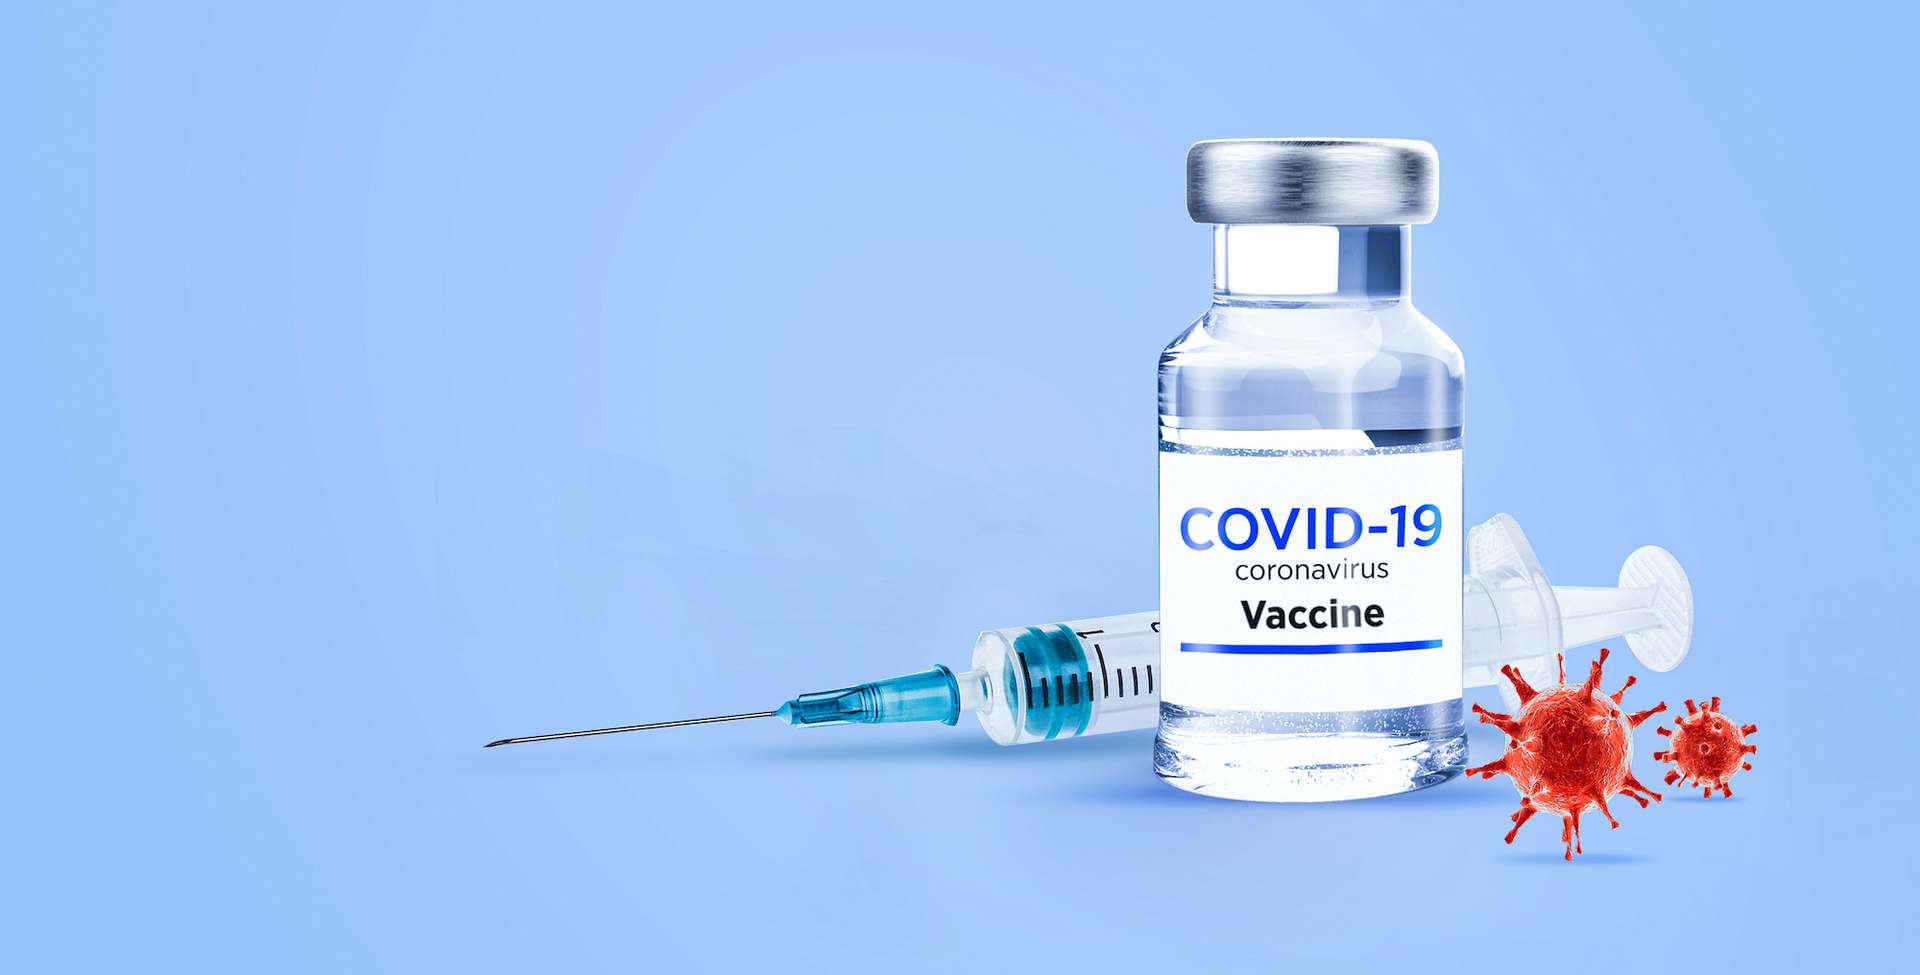 c34a1e7ce2 50167015 vaccin coronavirus ahmet aglamaz adobe stock